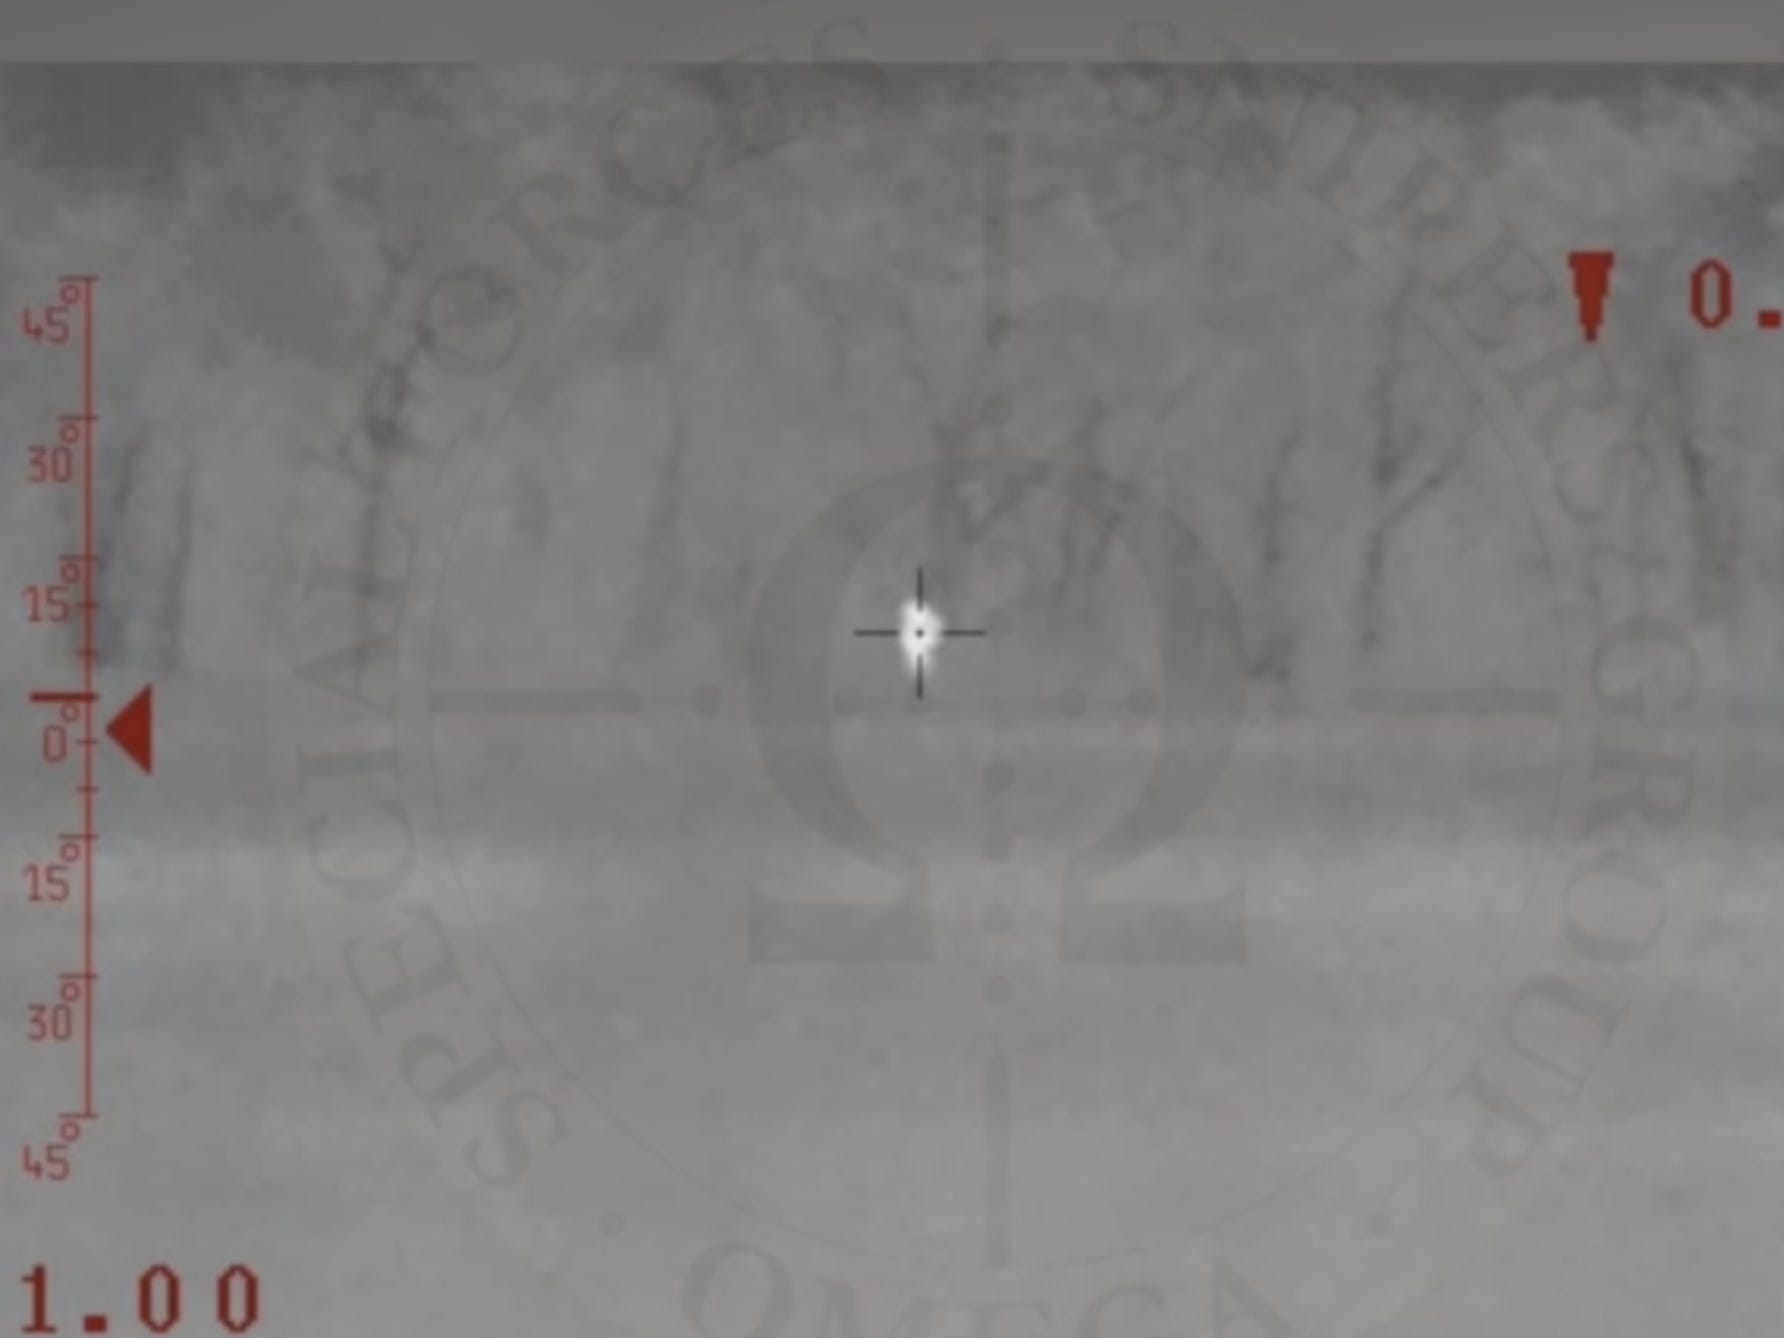 Ein Screenshot aus Graustufen-Wärmebildaufnahmen, die am 16. November von den Streitkräften der Ukraine geteilt wurden und angeblich einen Scharfschützen-Tötung zeigen sollen.  Eine sehr kleine weiße Figur erscheint in einem Fadenkreuz auf einem grau gesprenkelten Hintergrund.  .